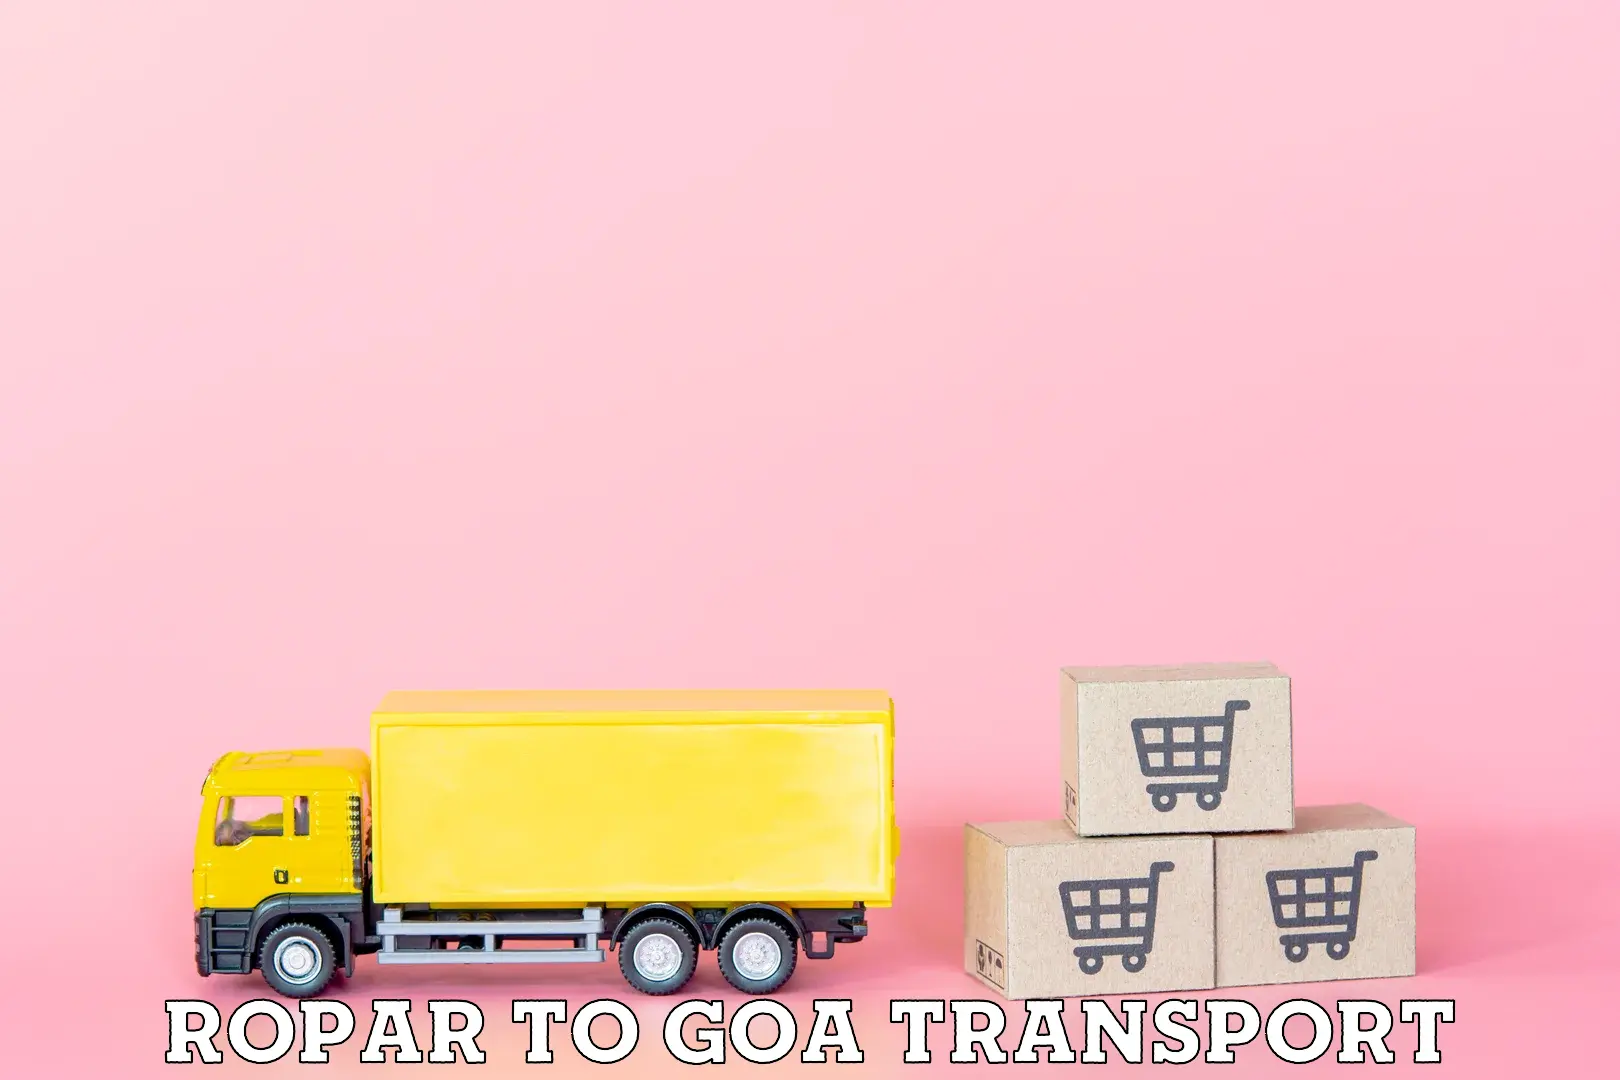 Furniture transport service Ropar to NIT Goa